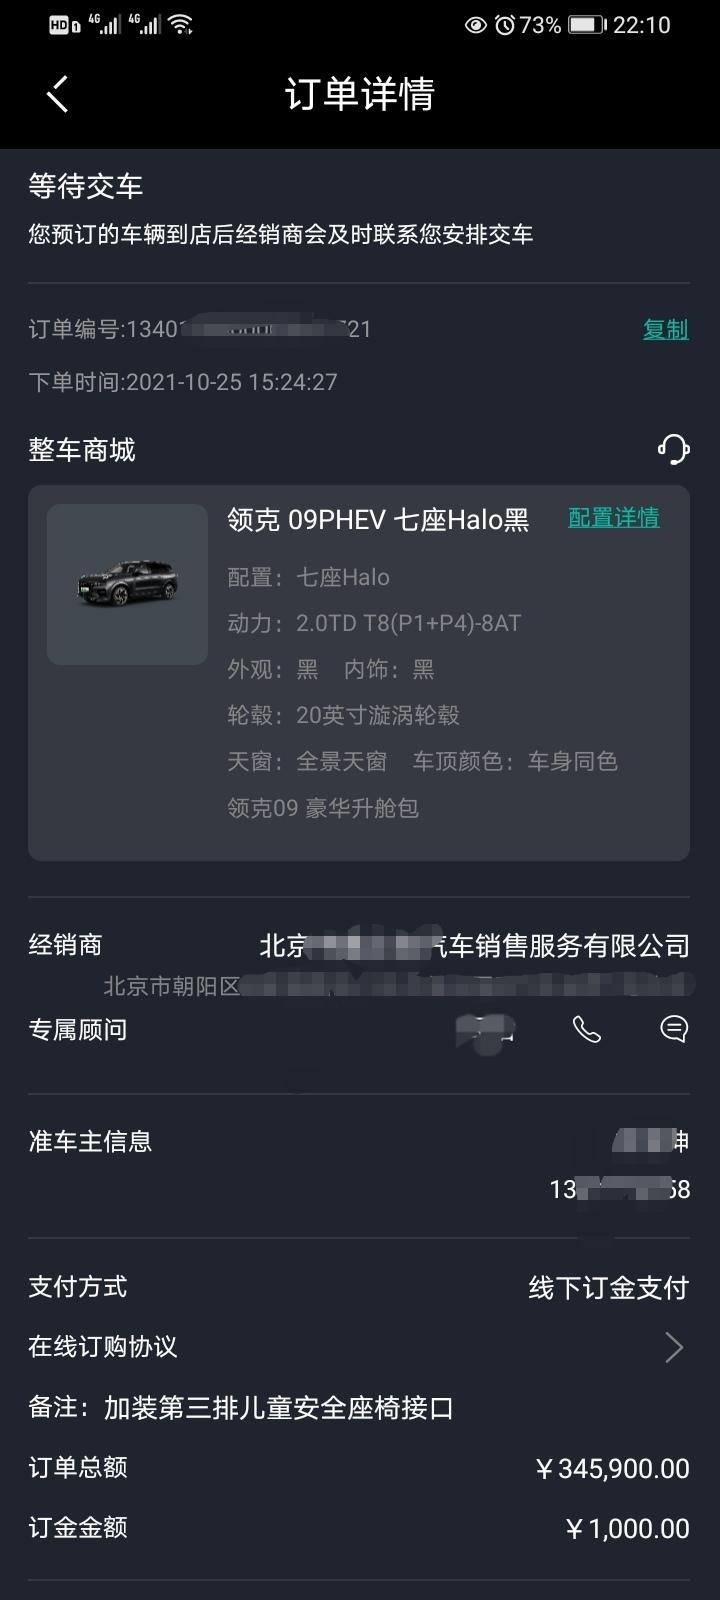 领克09 phev 本人在10月25日在北京朝阳某4S店已定PHEV七座HALO加升舱包。选择09PHEV的个人想法：1安全，沃尔沃SPA架构XC90的安全真的不是盲目崇拜，09的超纲碰撞测试也是可以的，网上可查。当然GS8的安全也是可以的，但09毕竟有沃尔沃SPAXC90做背书；2外观，中毒全黑09，肯定有很多有同感的朋友，可惜不能选择黑外白内。新GS8混动前脸太夸张了，不过审美这东西只代表个人观点；3用车需求，本人每天通勤50公里左右，偶尔跑高速400多公里，09纯电和混动完全满足，而且我可以安装充电